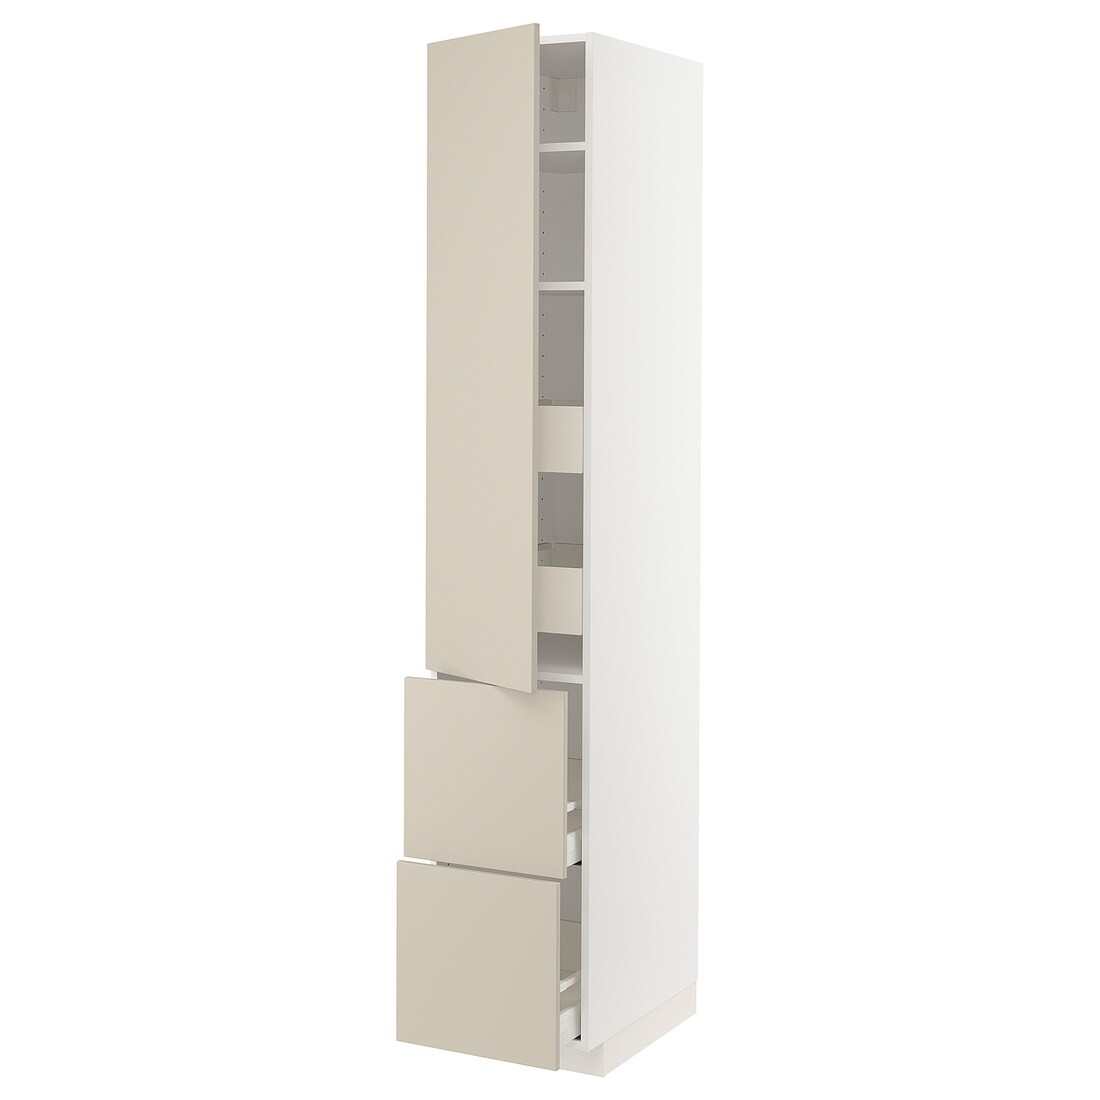 IKEA METOD МЕТОД / MAXIMERA МАКСИМЕРА Высокий шкаф с полками / ящиками, белый / Havstorp бежевый, 40x60x220 см 69426755 694.267.55